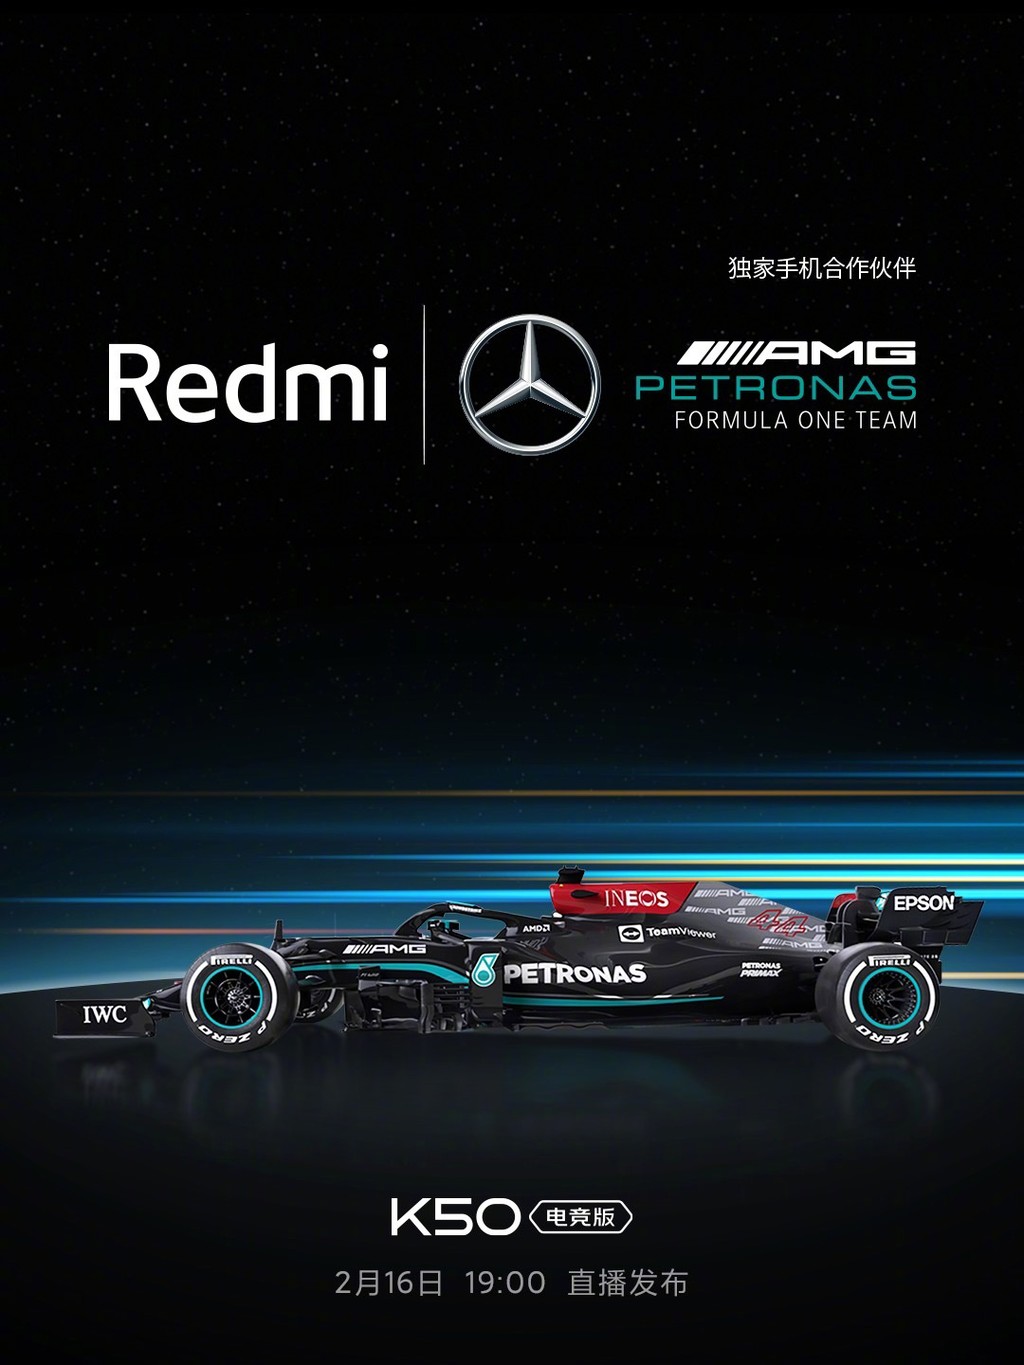 Xiaomi công bố hợp tác với đội đua Mercedes-AMG cho dòng Redmi K50  ảnh 1